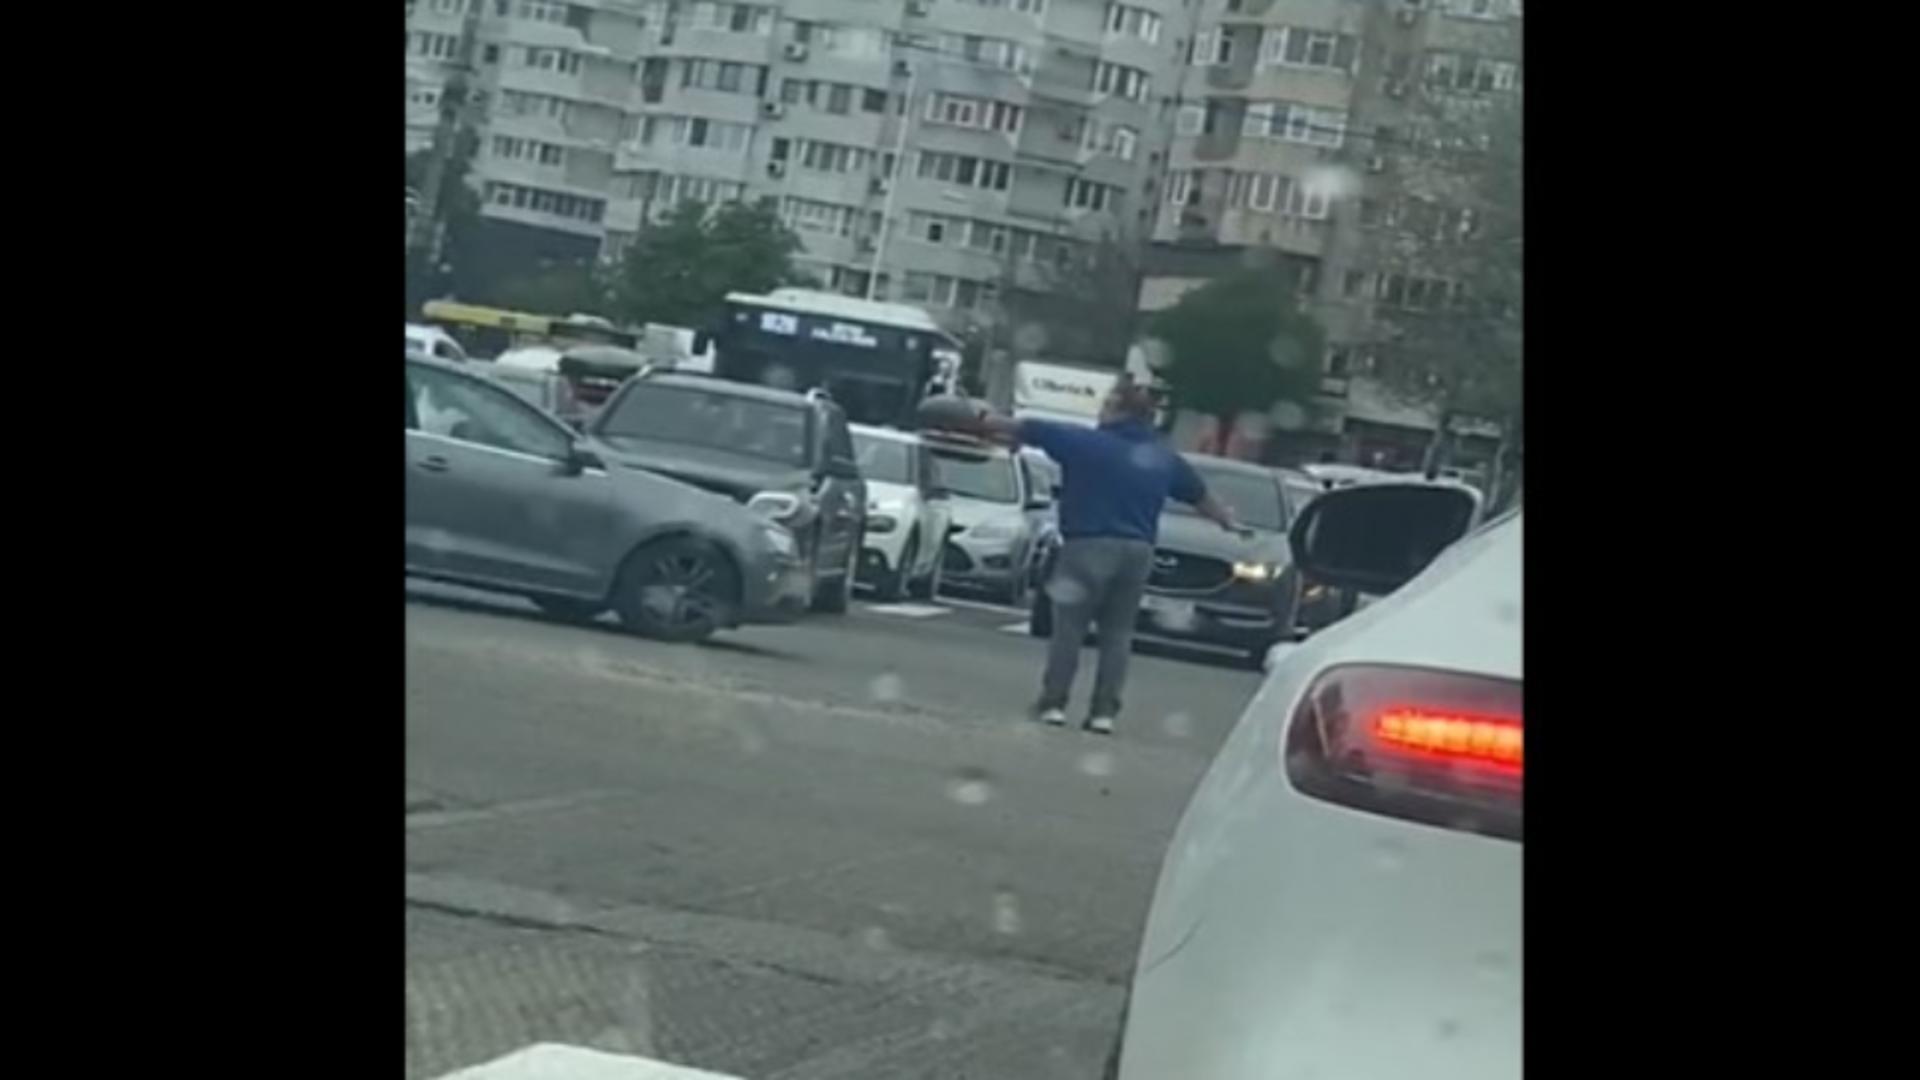 Gest incredibil al unui șofer din Constanța: A început să dirijeze circulația Foto: Ziua de Constanta